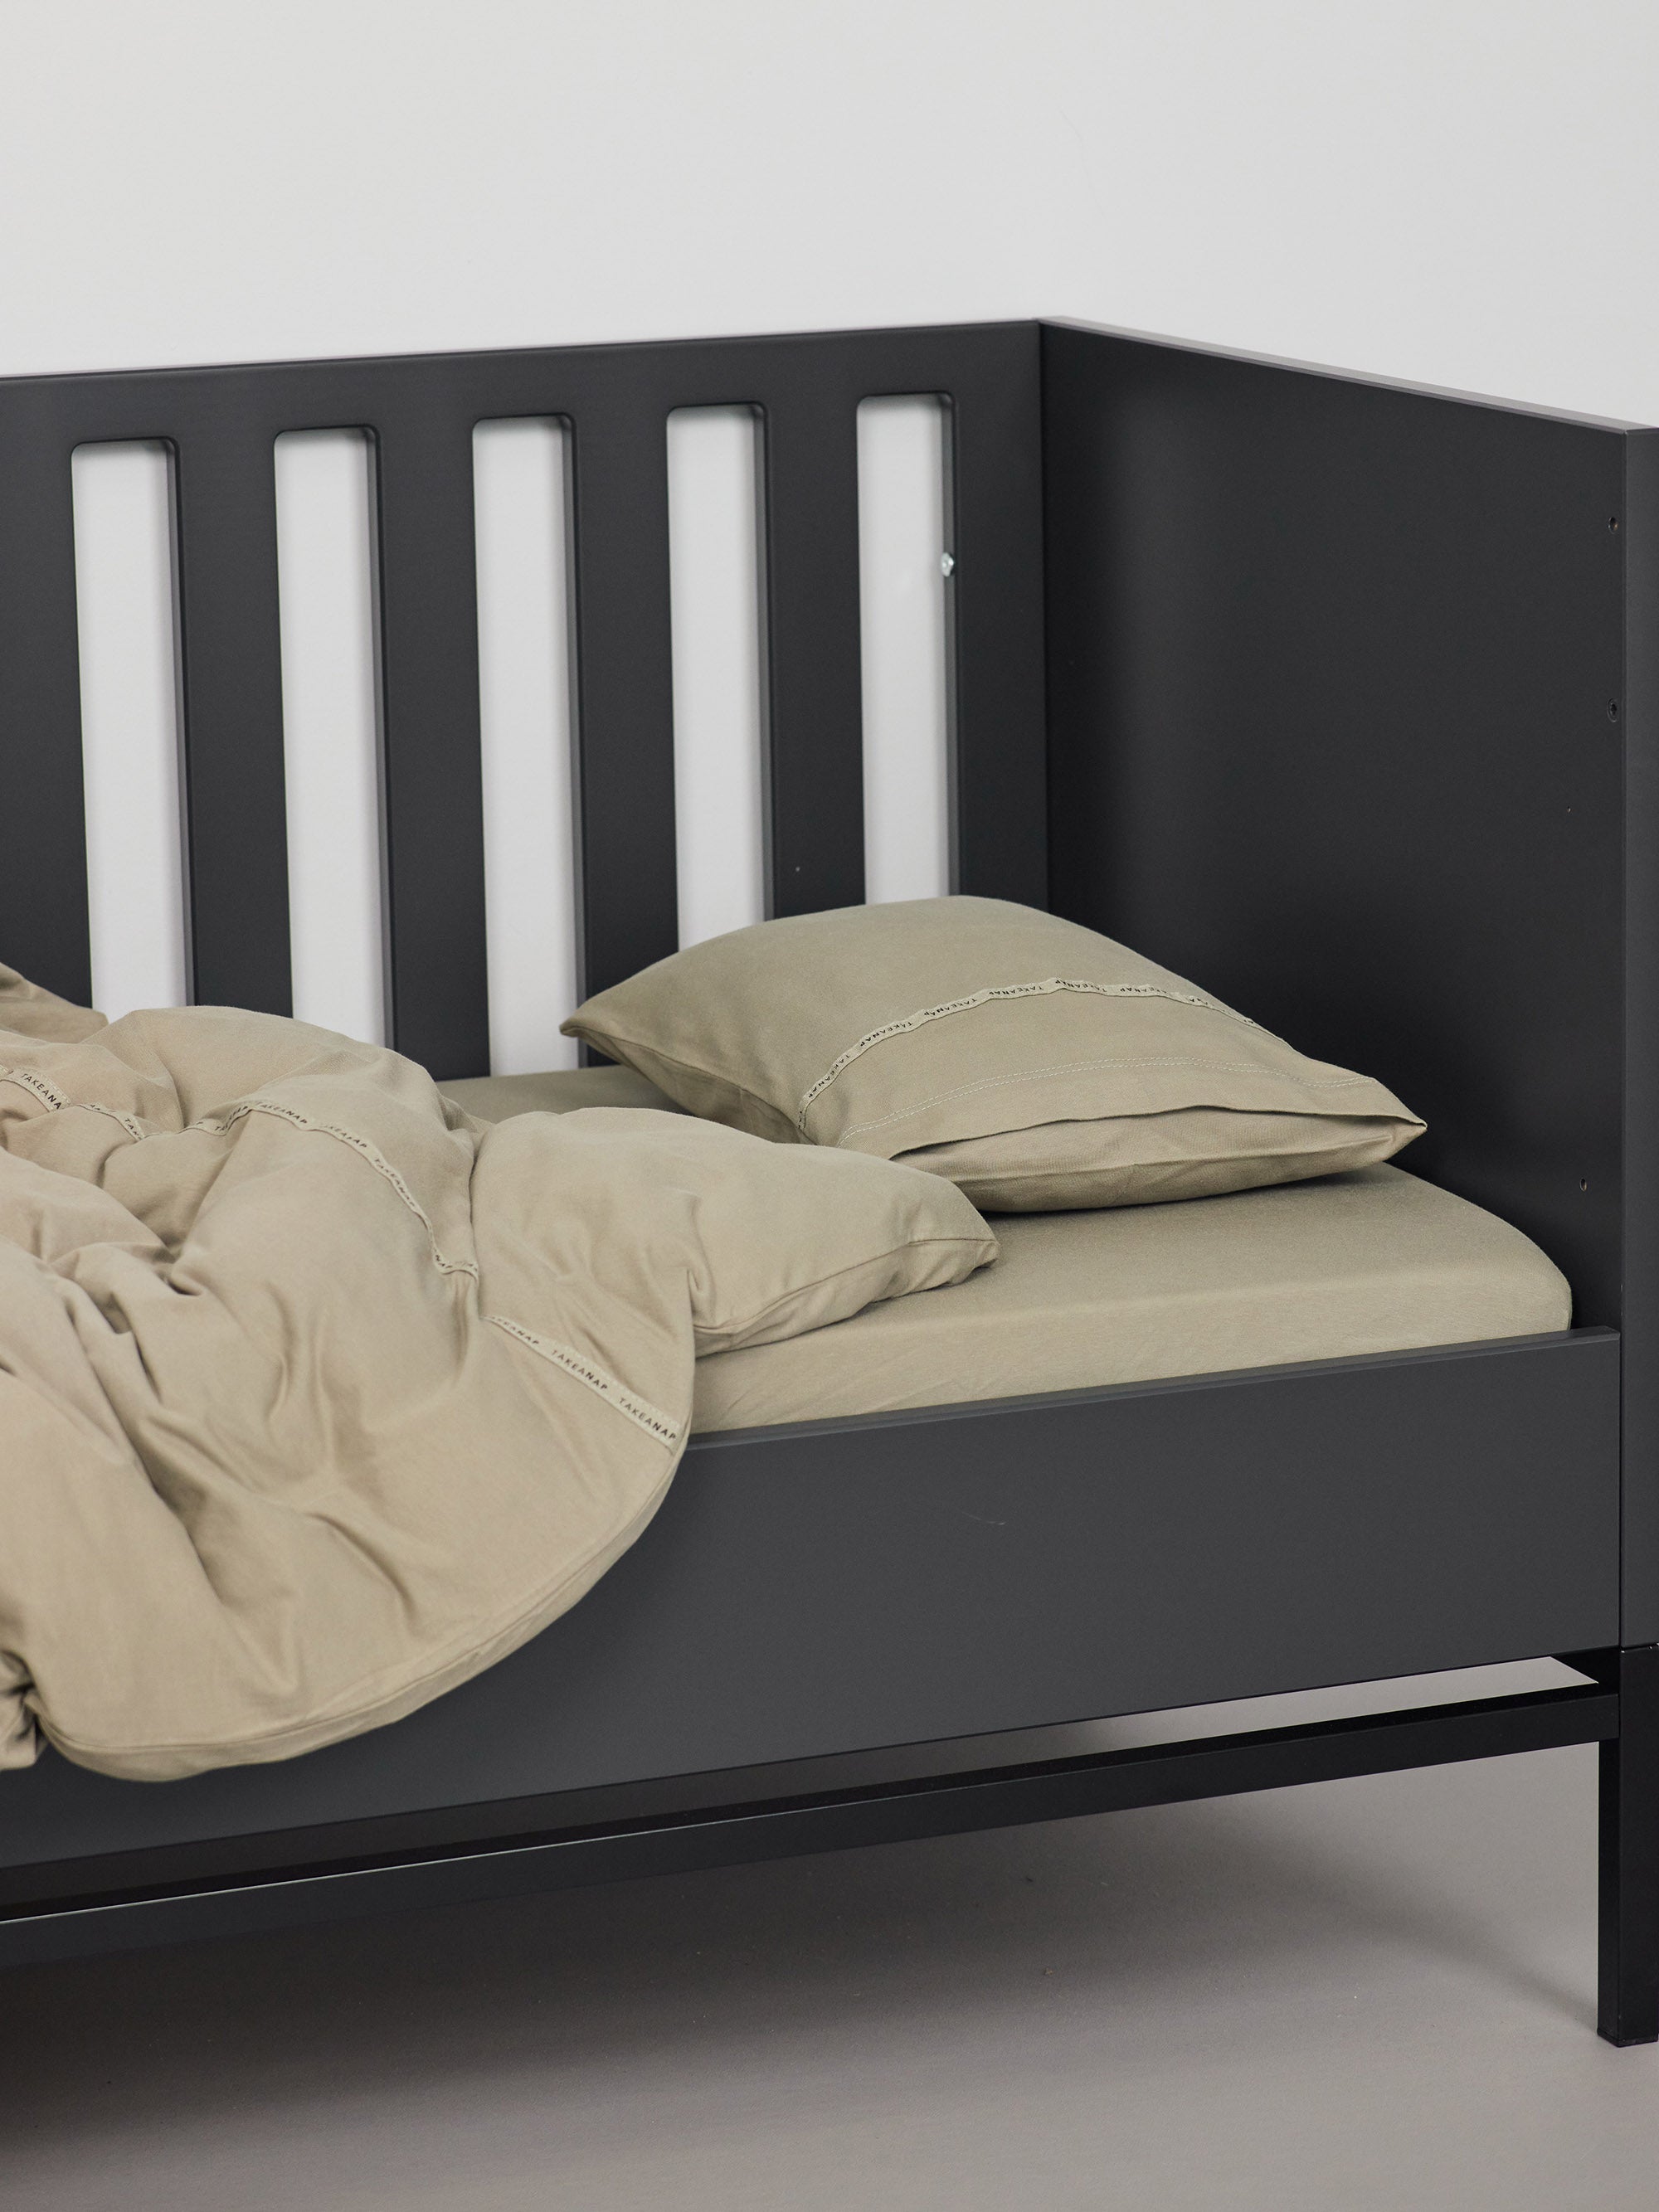 כרית עם ציפית לכרית קטנה בצבע זית עם שמיכת פוך בתוך מיטת תינוק שחורה